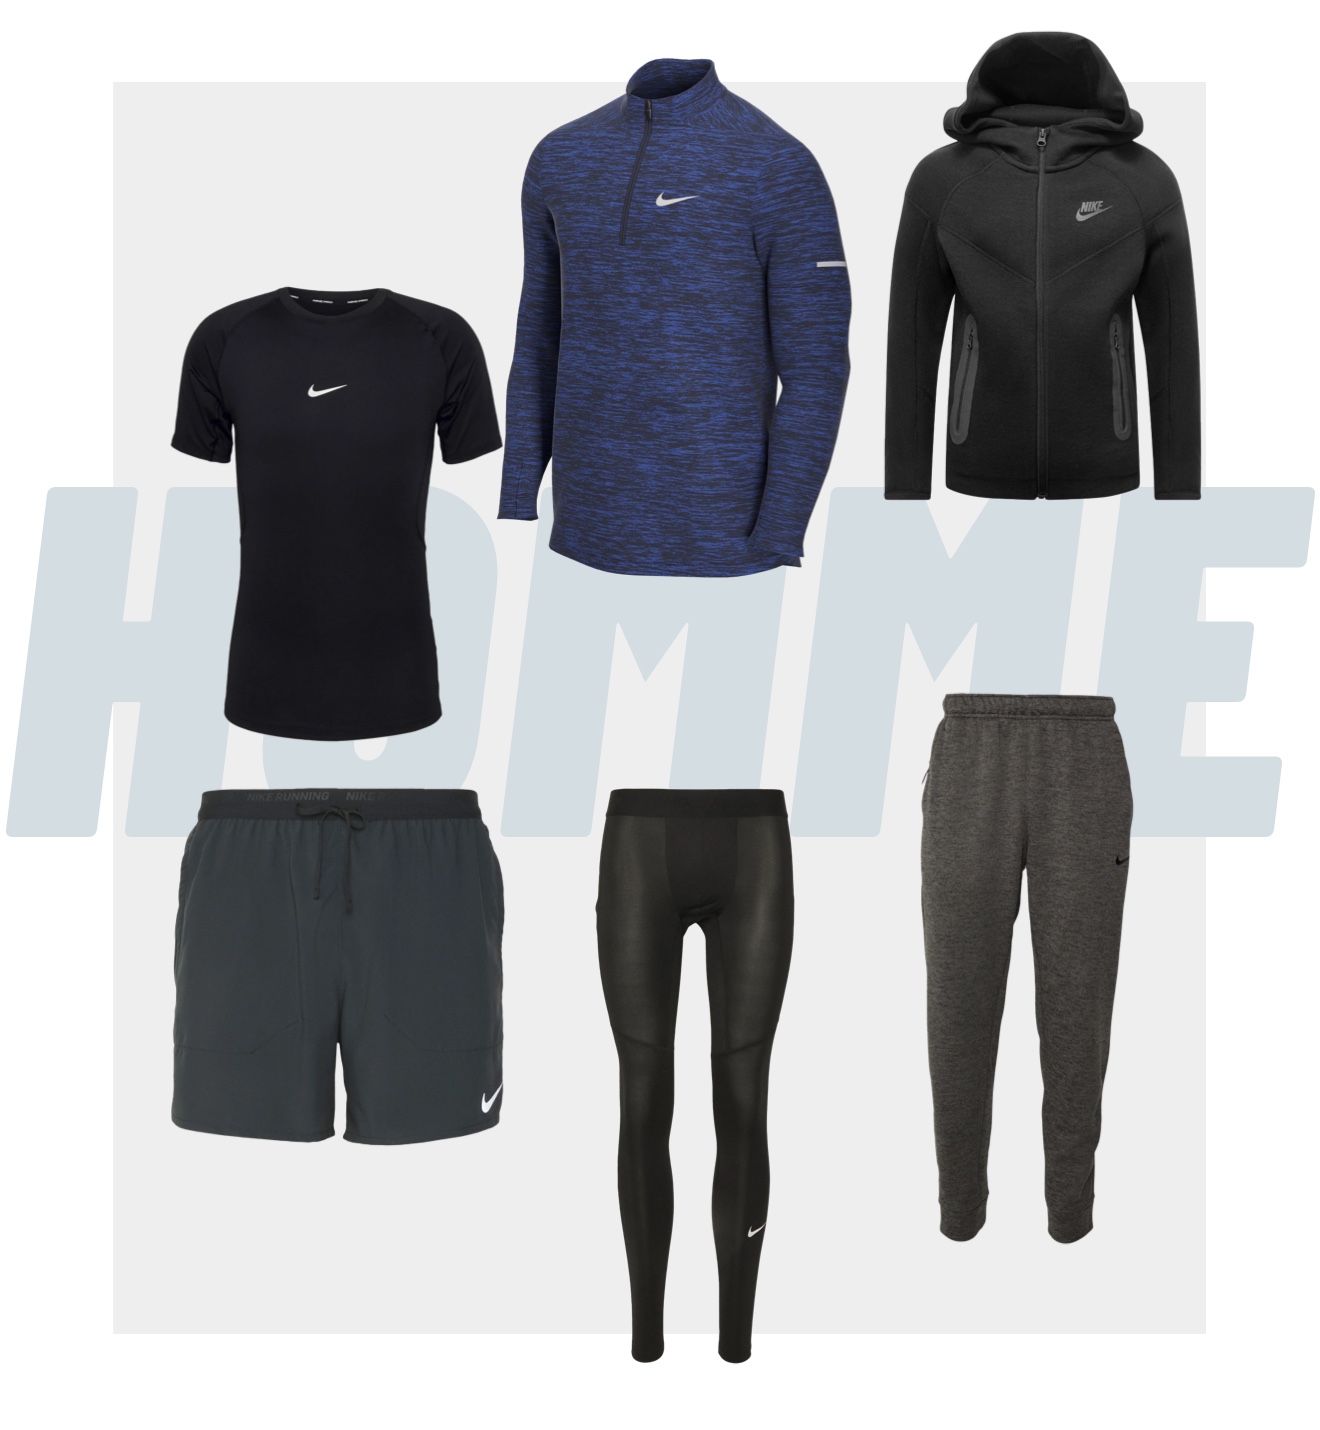 Vêtements Nike homme pour le fitness et les entrainements en salle de sport